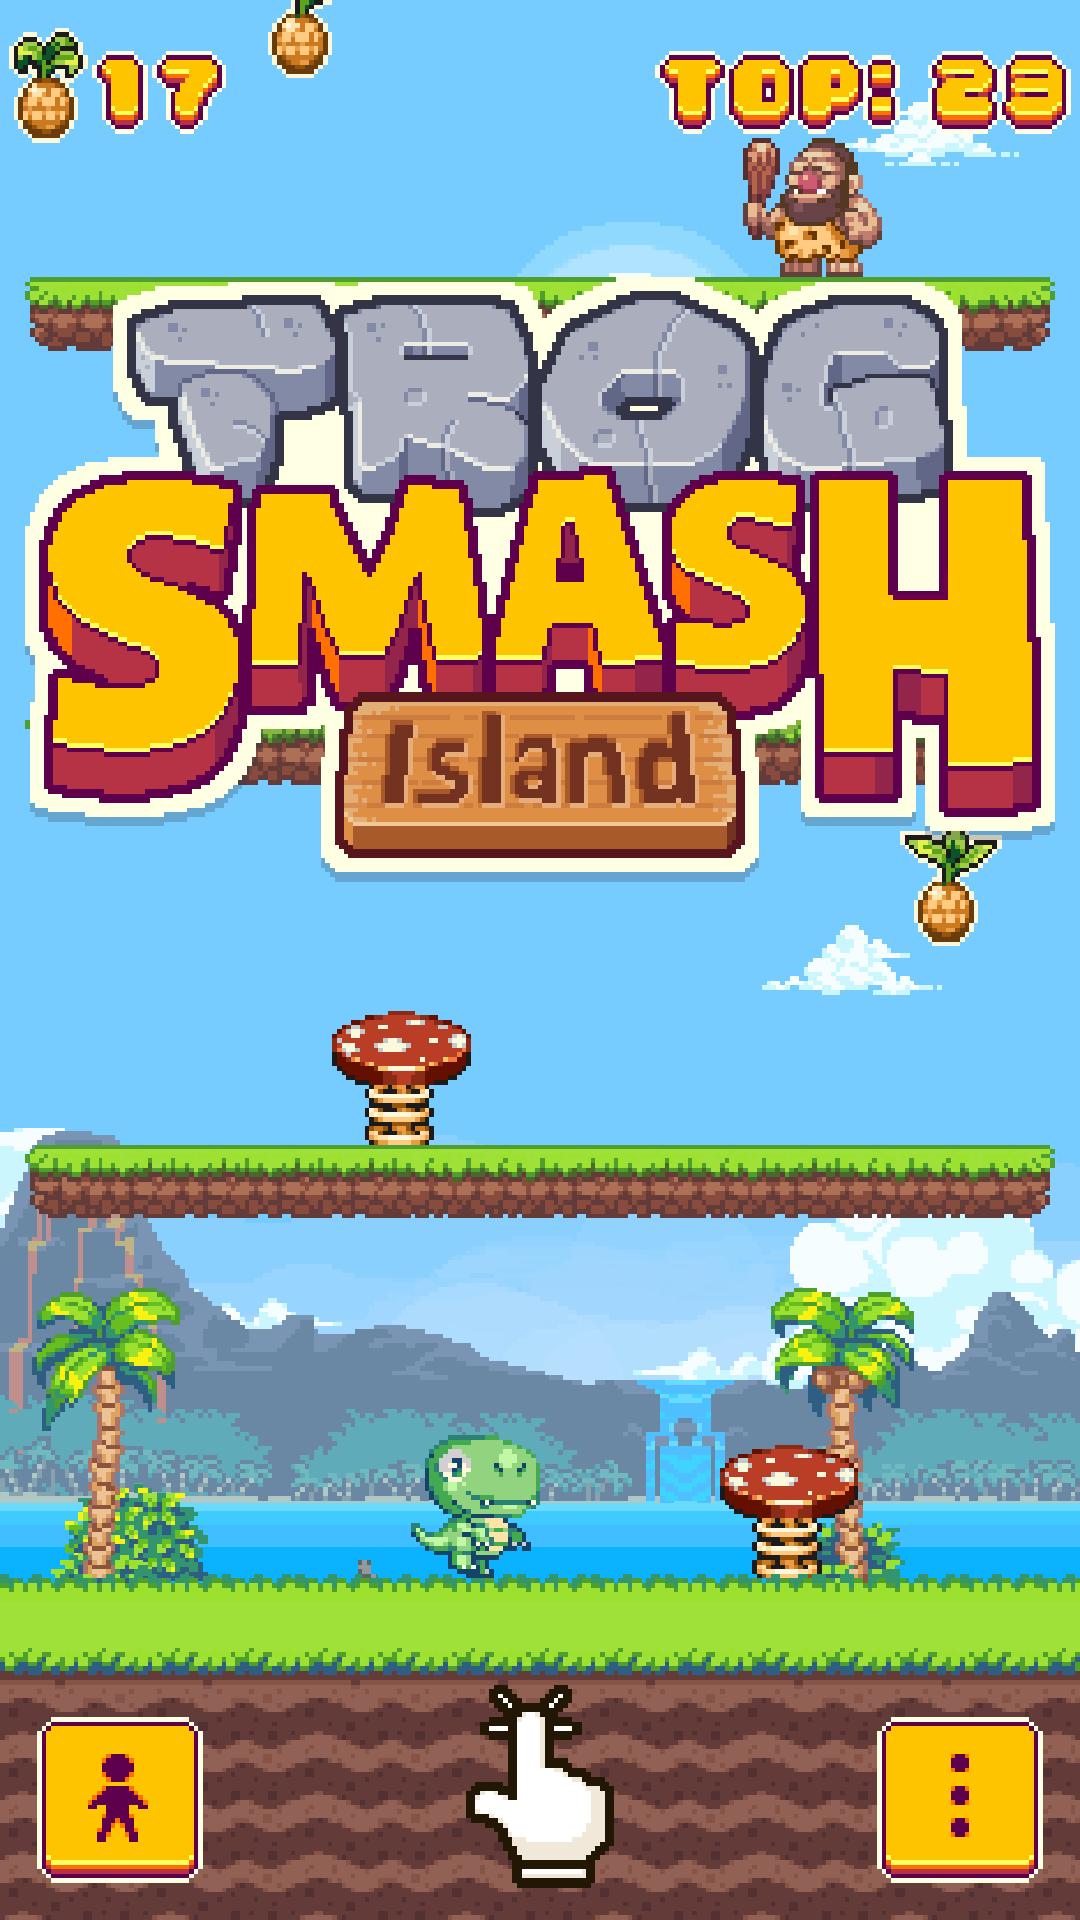 Smashers island